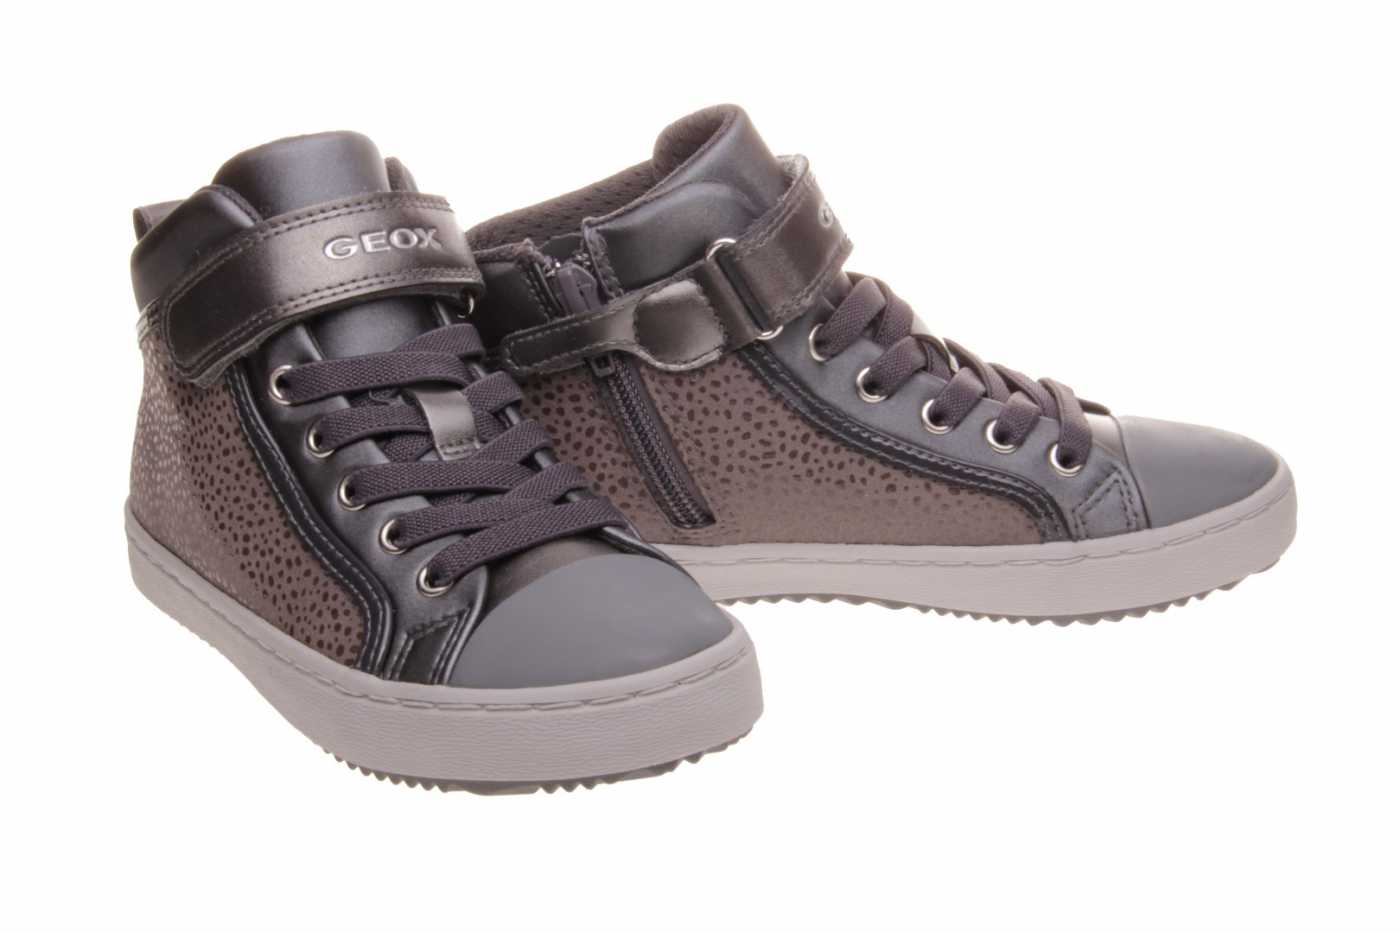 Comprar zapato GEOX para JOVEN estilo BOTINES-BOTA ALTA color GRIS PIEL